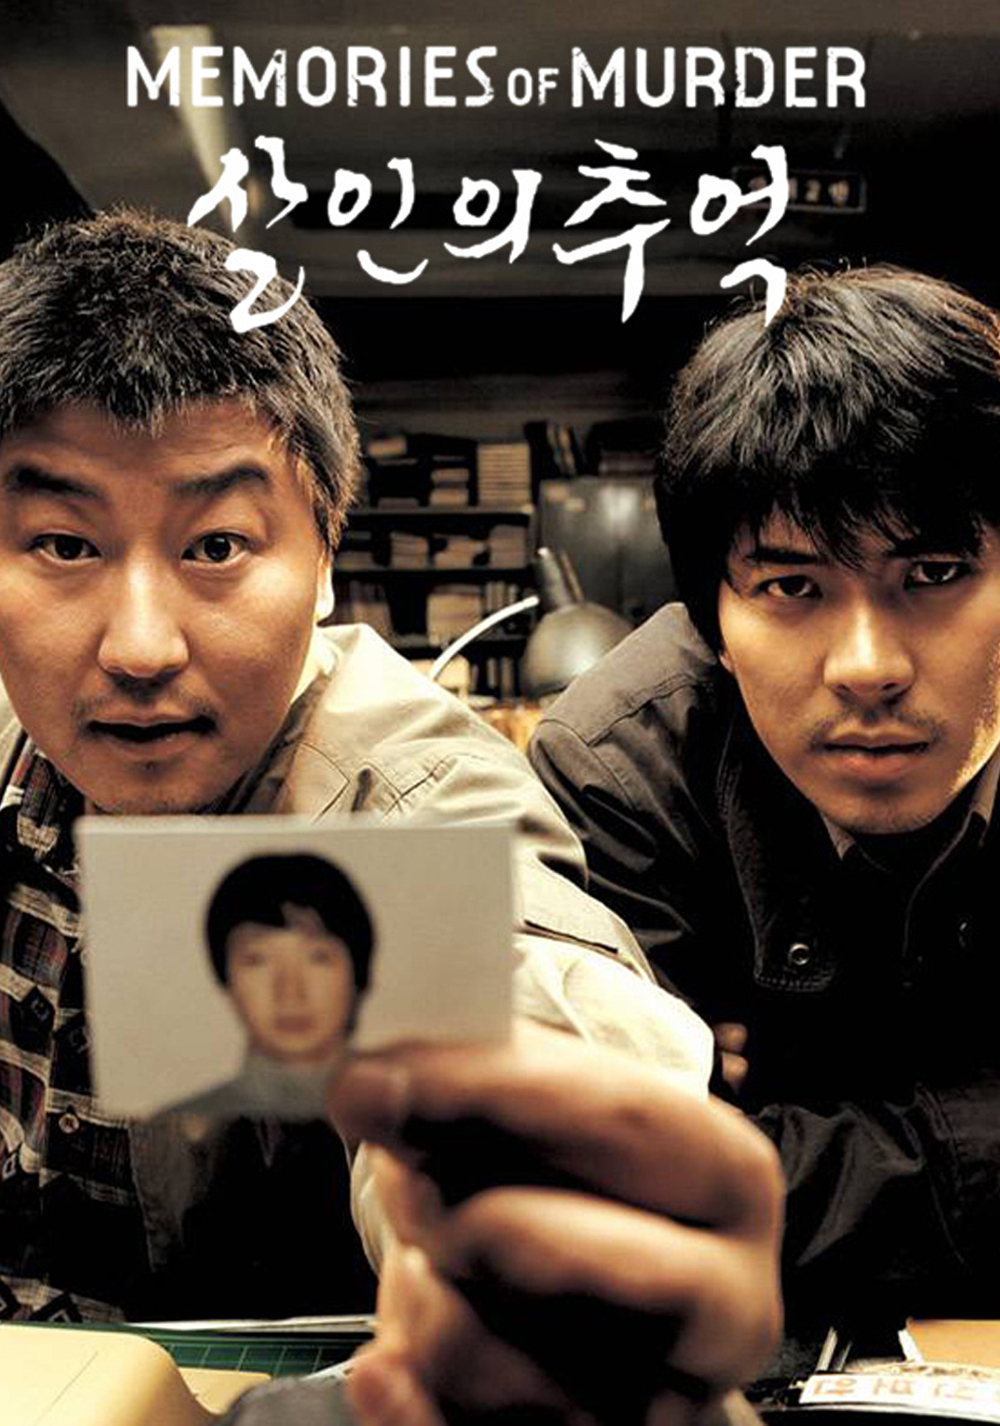 Những bộ phim Hàn Quốc hay nhất thế giới: Hồi ức kẻ sát nhân - Memories of Murder (2003)